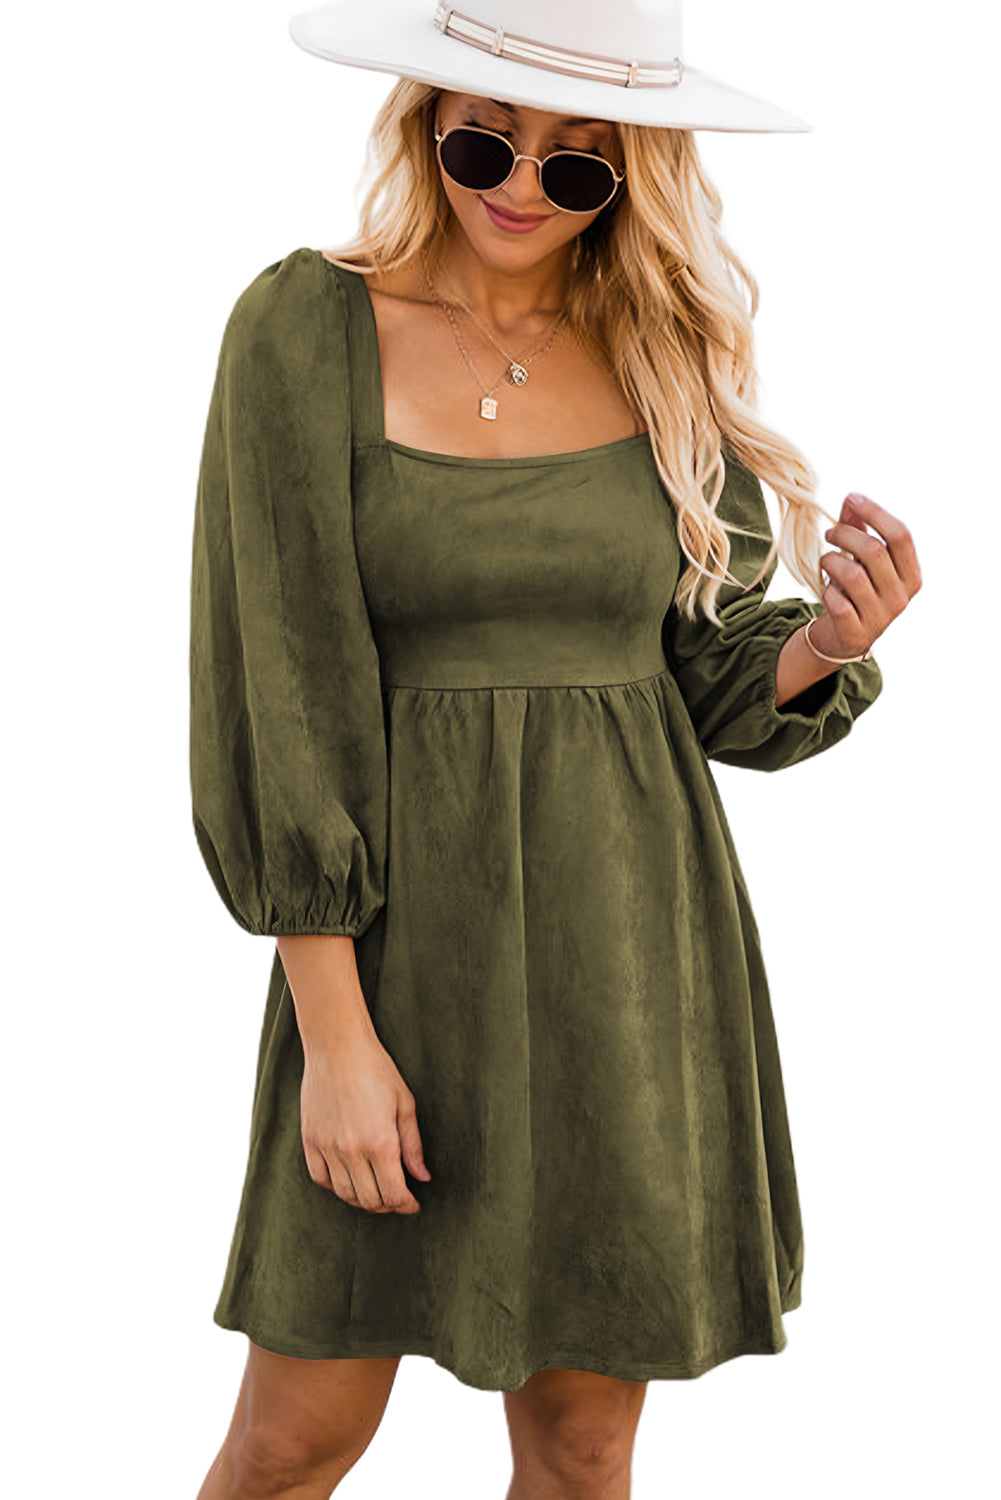 Pickle Green Brown Suede Square Neck Flared Dress Dresses JT's Designer Fashion